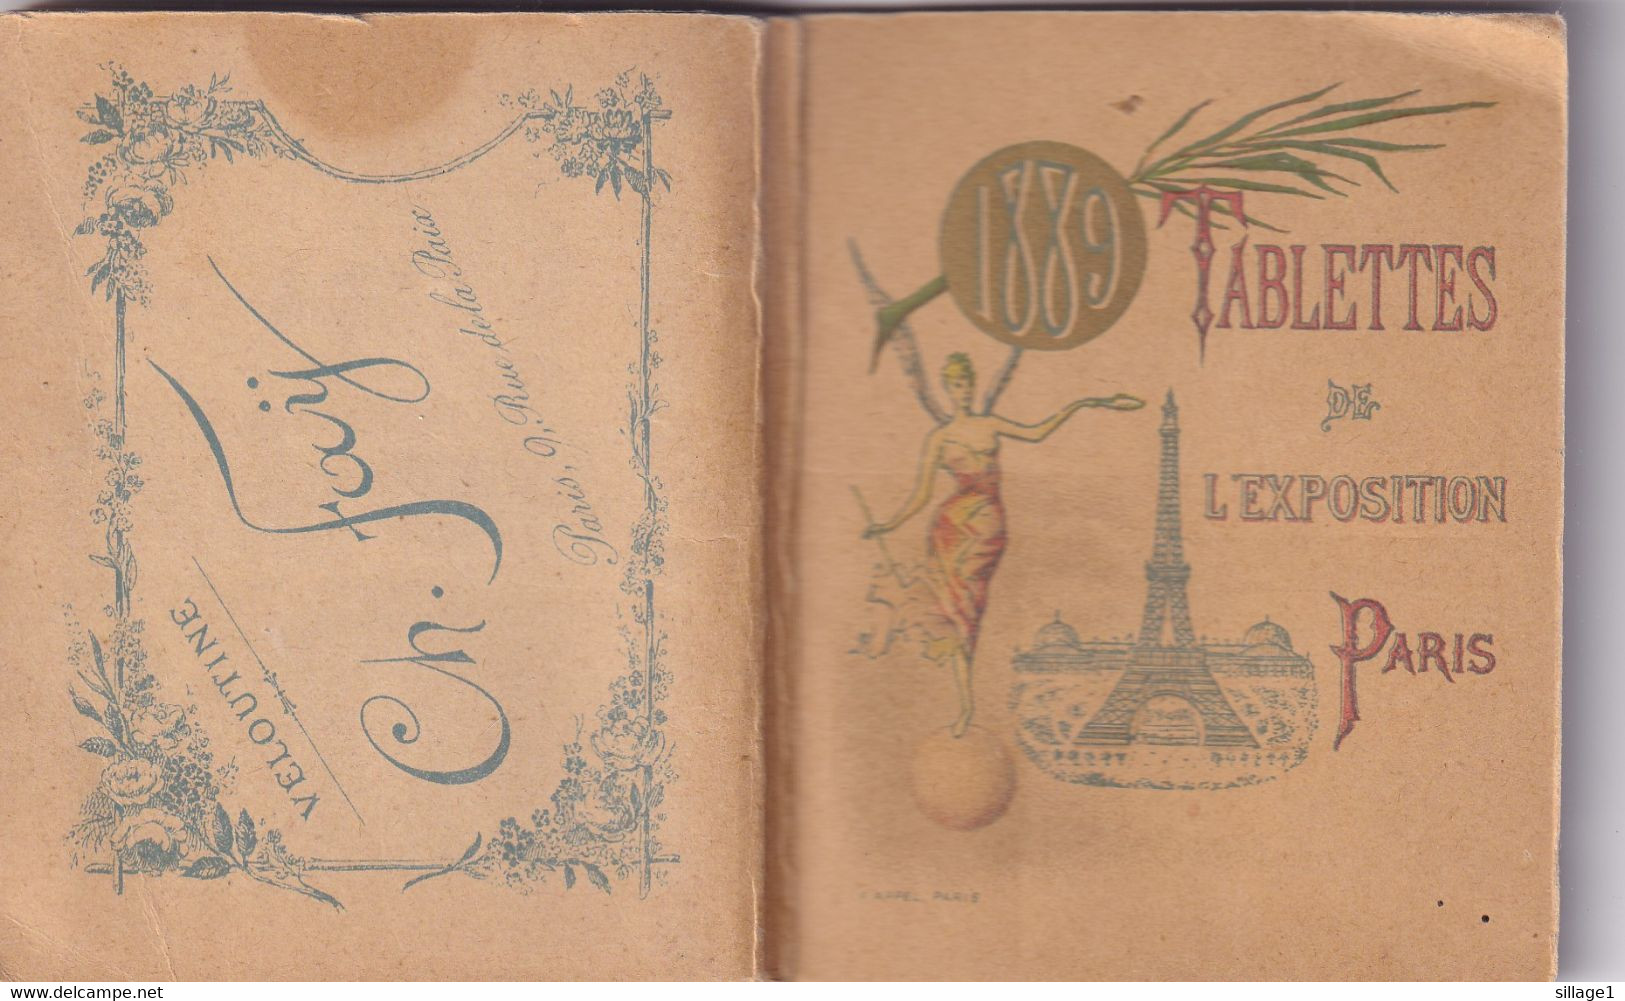 Paris - Tablettes De L'exposition Paris 1889 - 9x7cms - Parisiana Planches Dépliantes La Tour Eiffel Dome Plan Expo 1889 - Paris